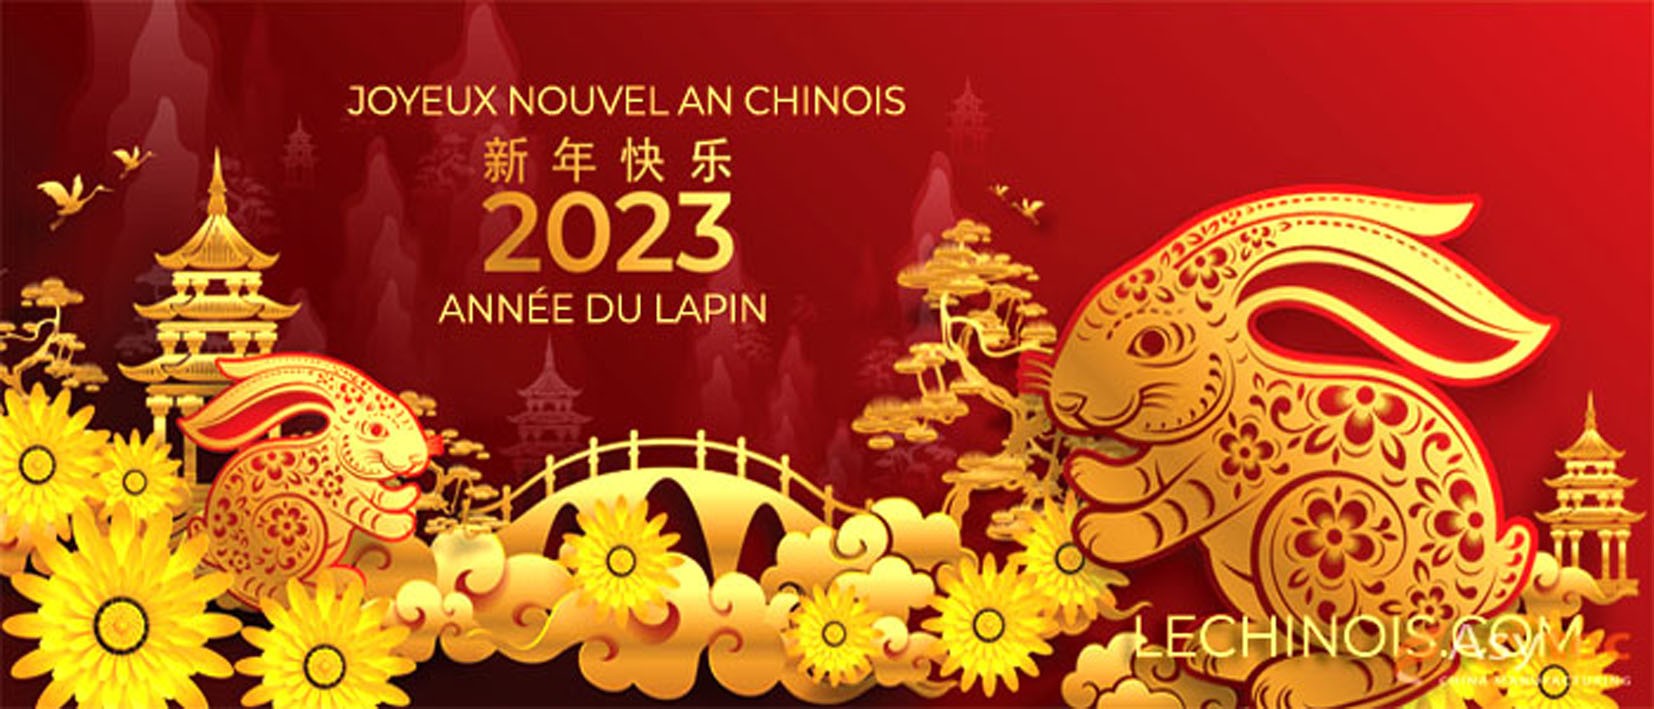 Joyeux nouvel an chinois